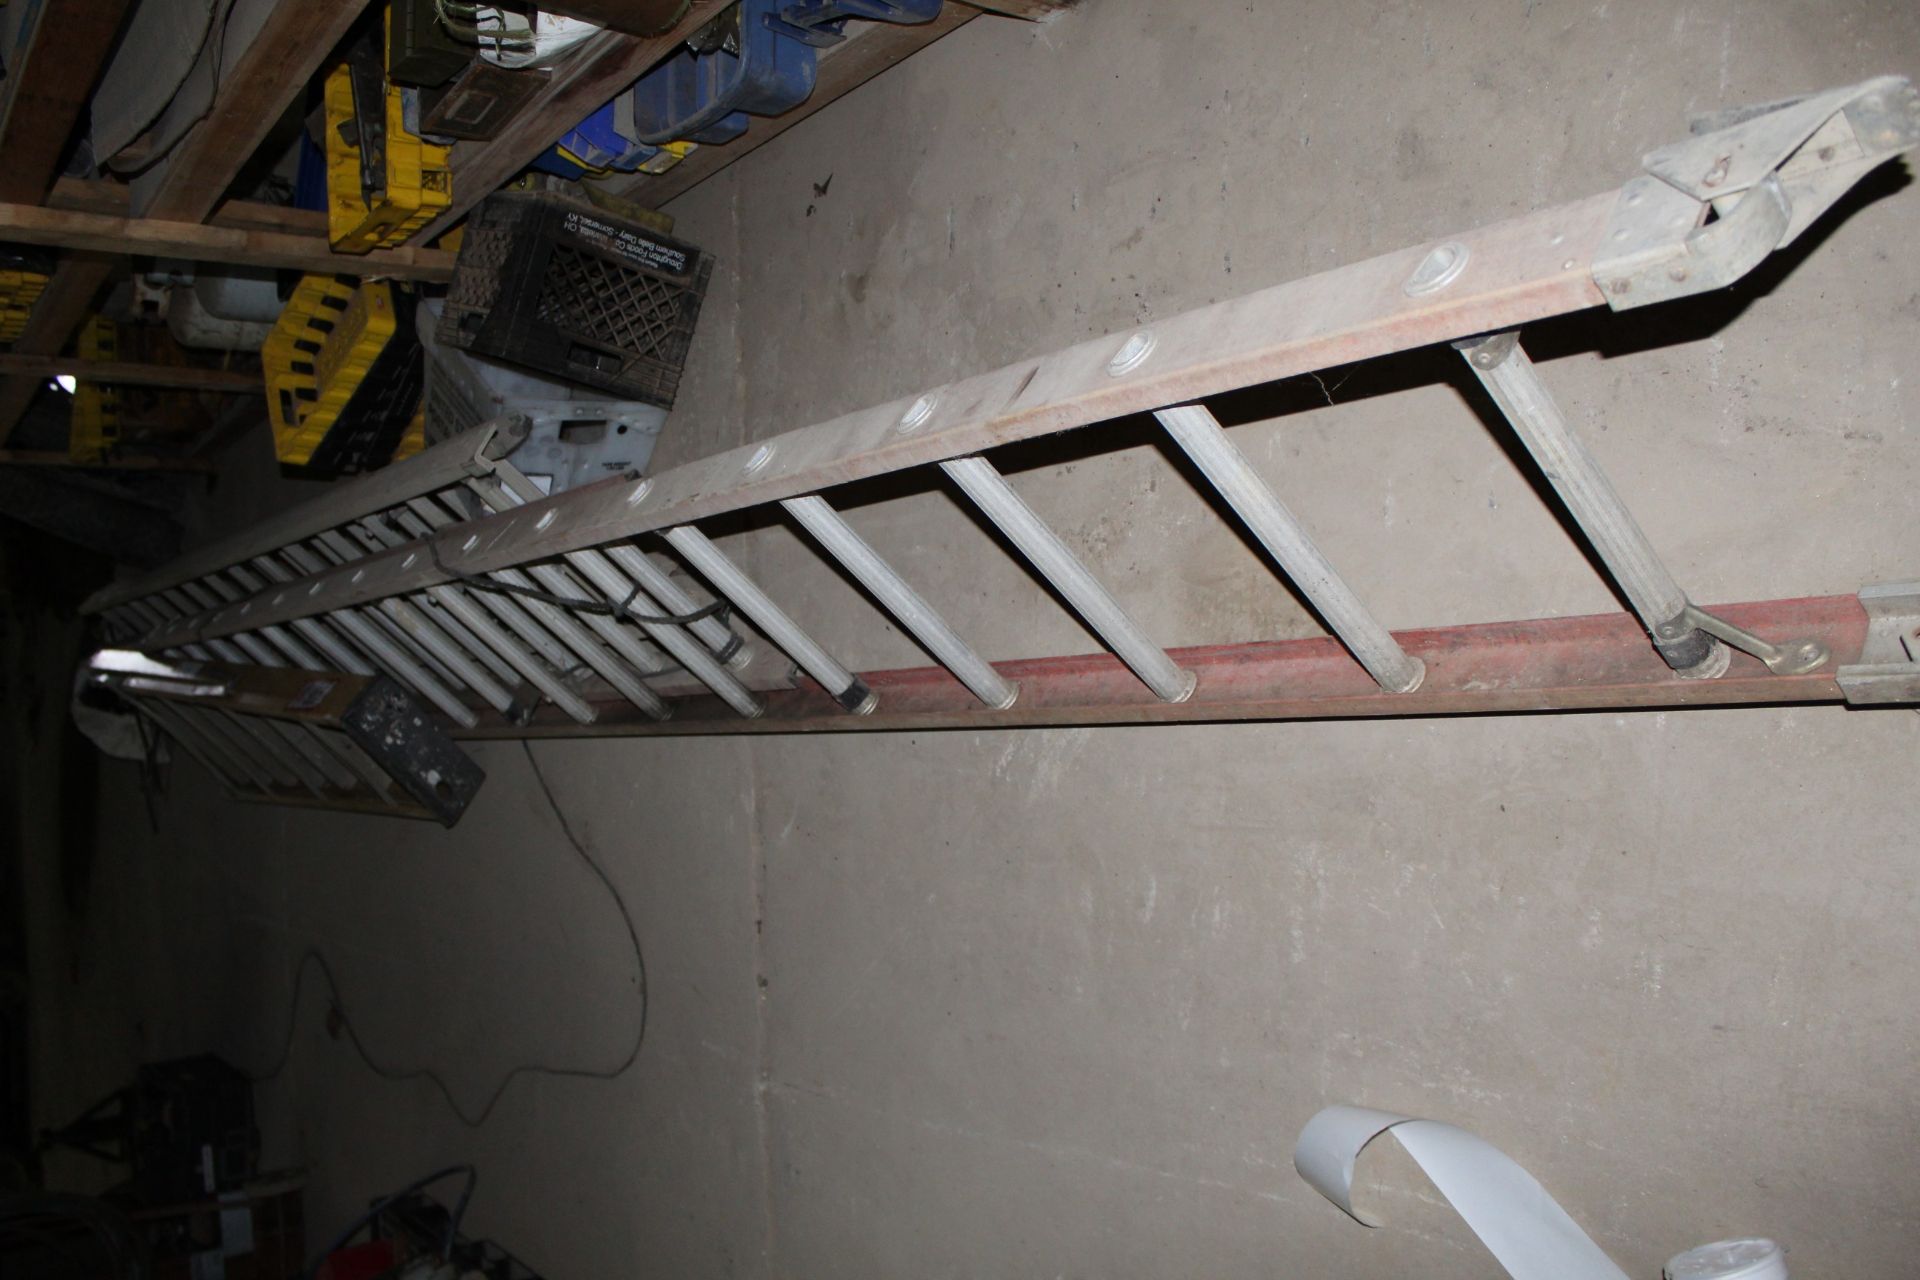 24' Fiberglass Extension Ladder, 32' Fiberglass Extension Ladder, and 8' Fiberglass Step Ladder